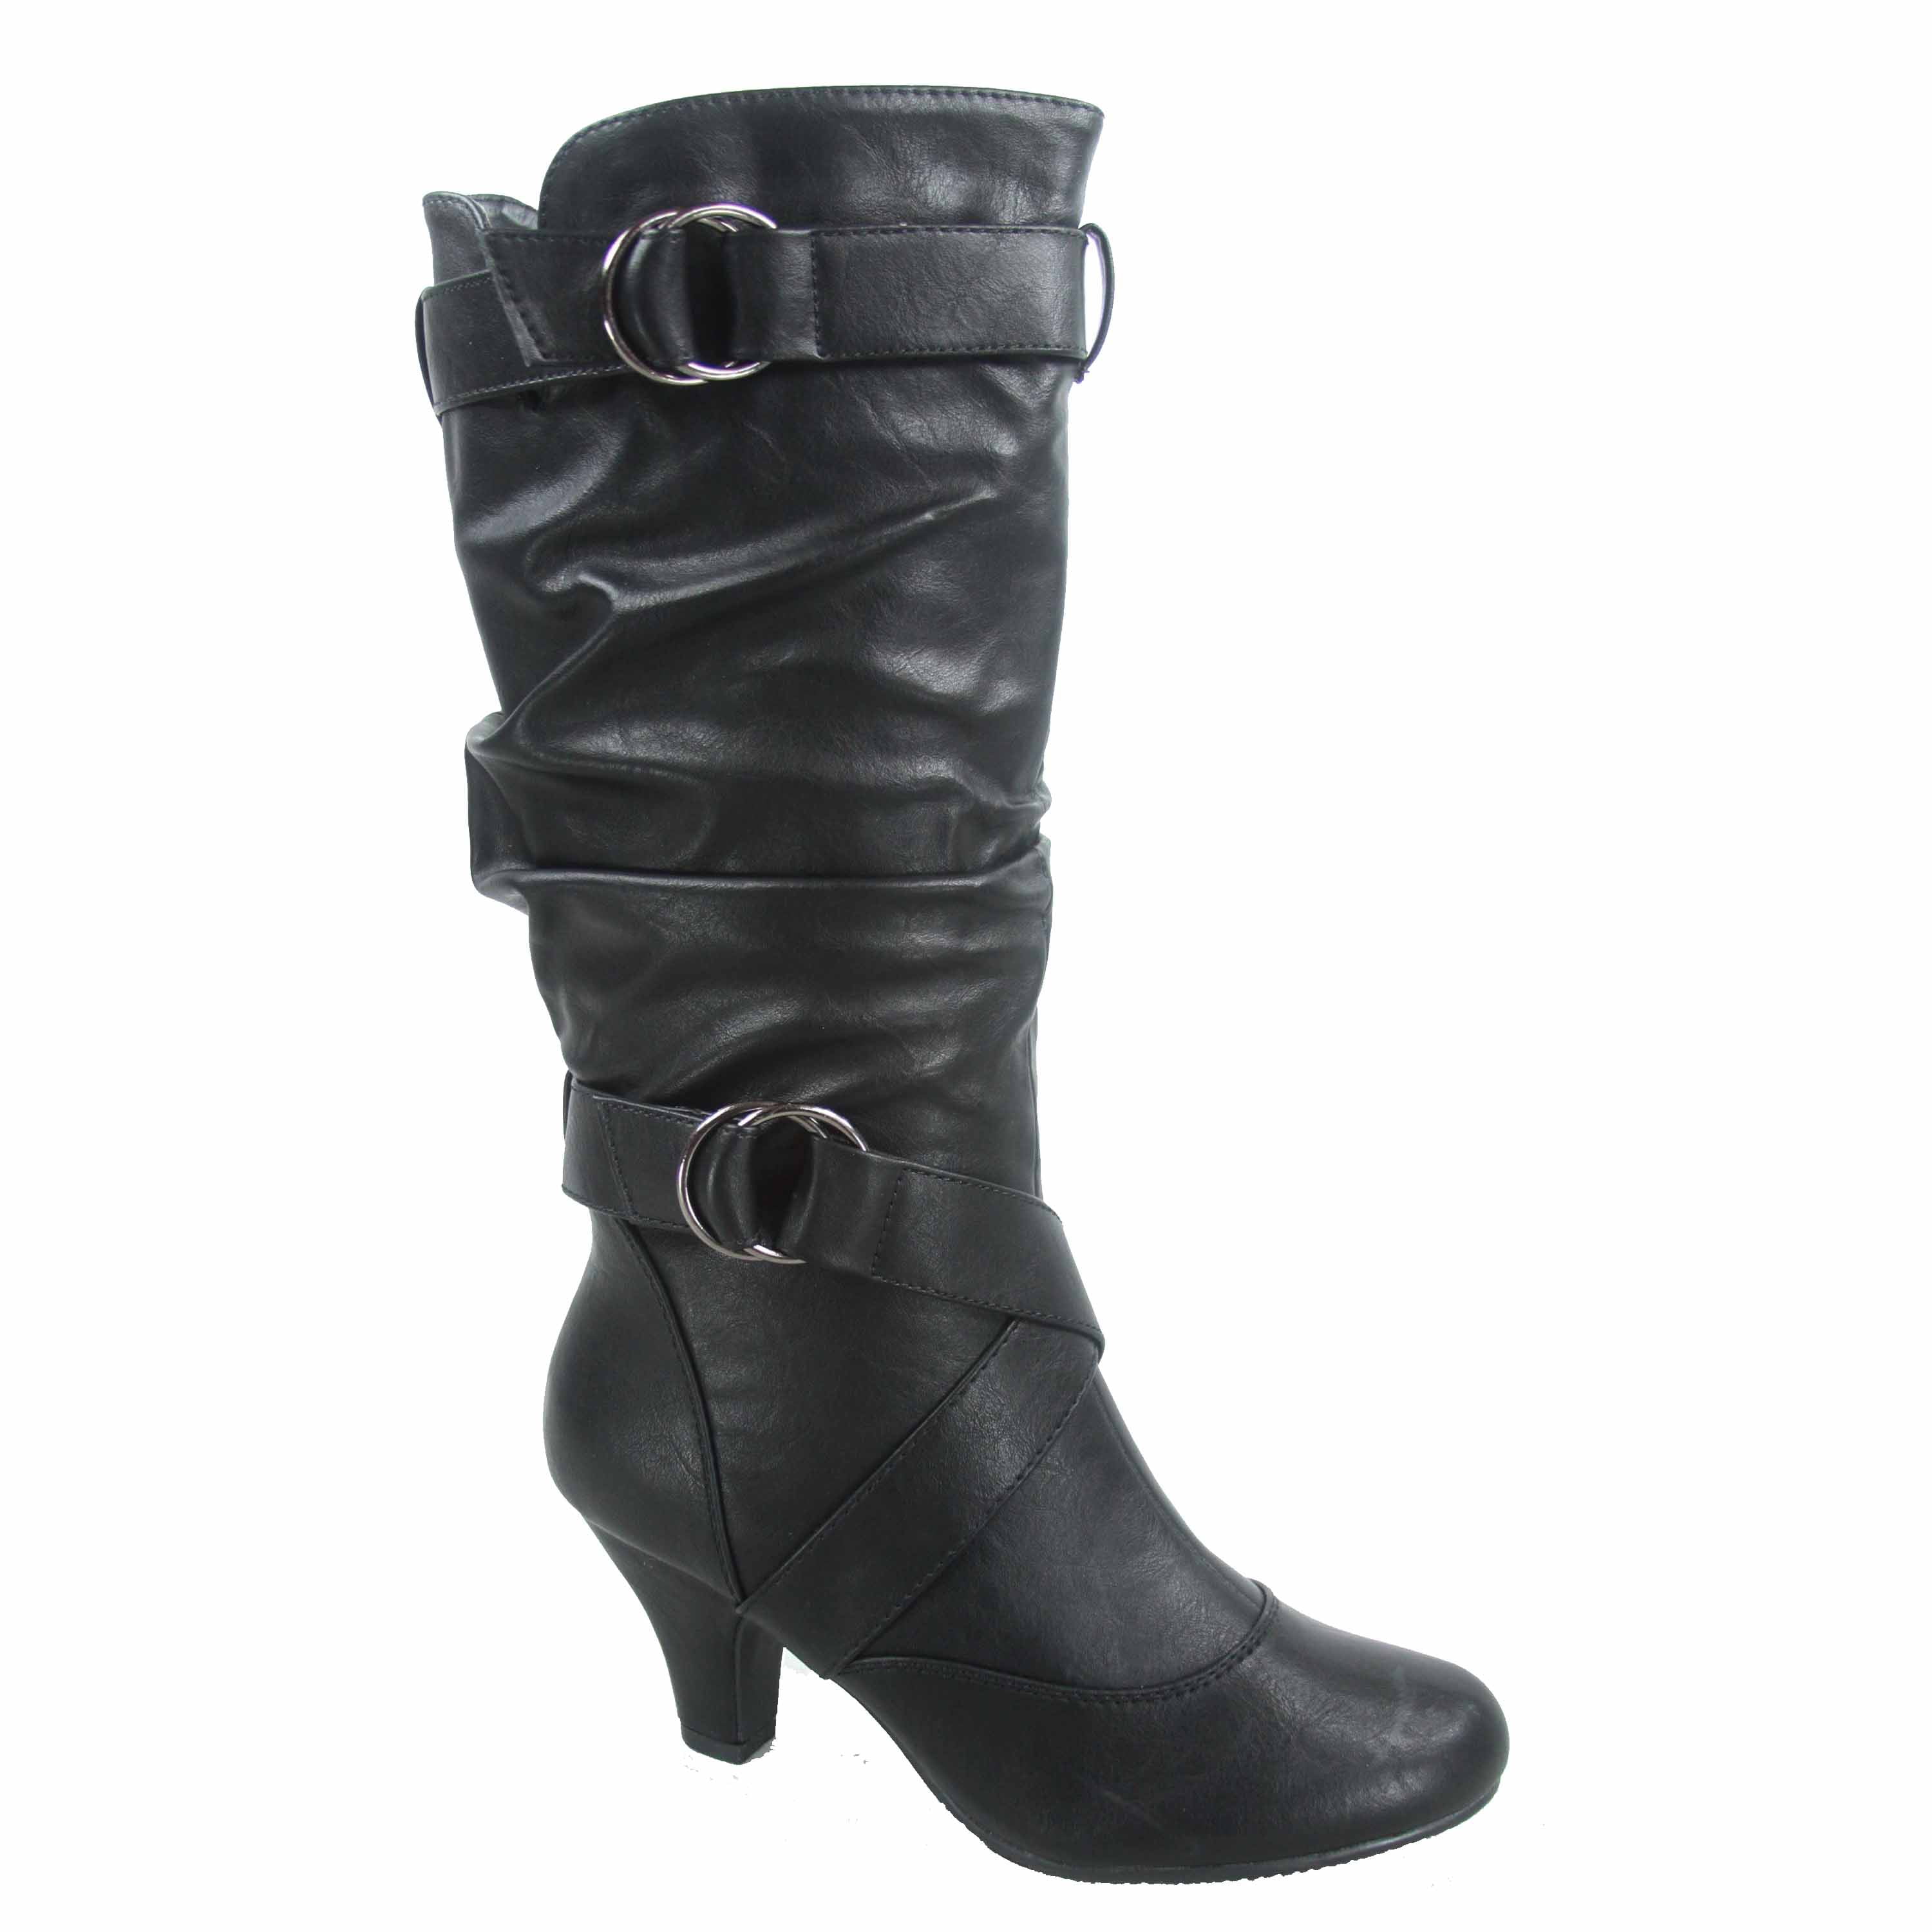 women's high heel dress boots